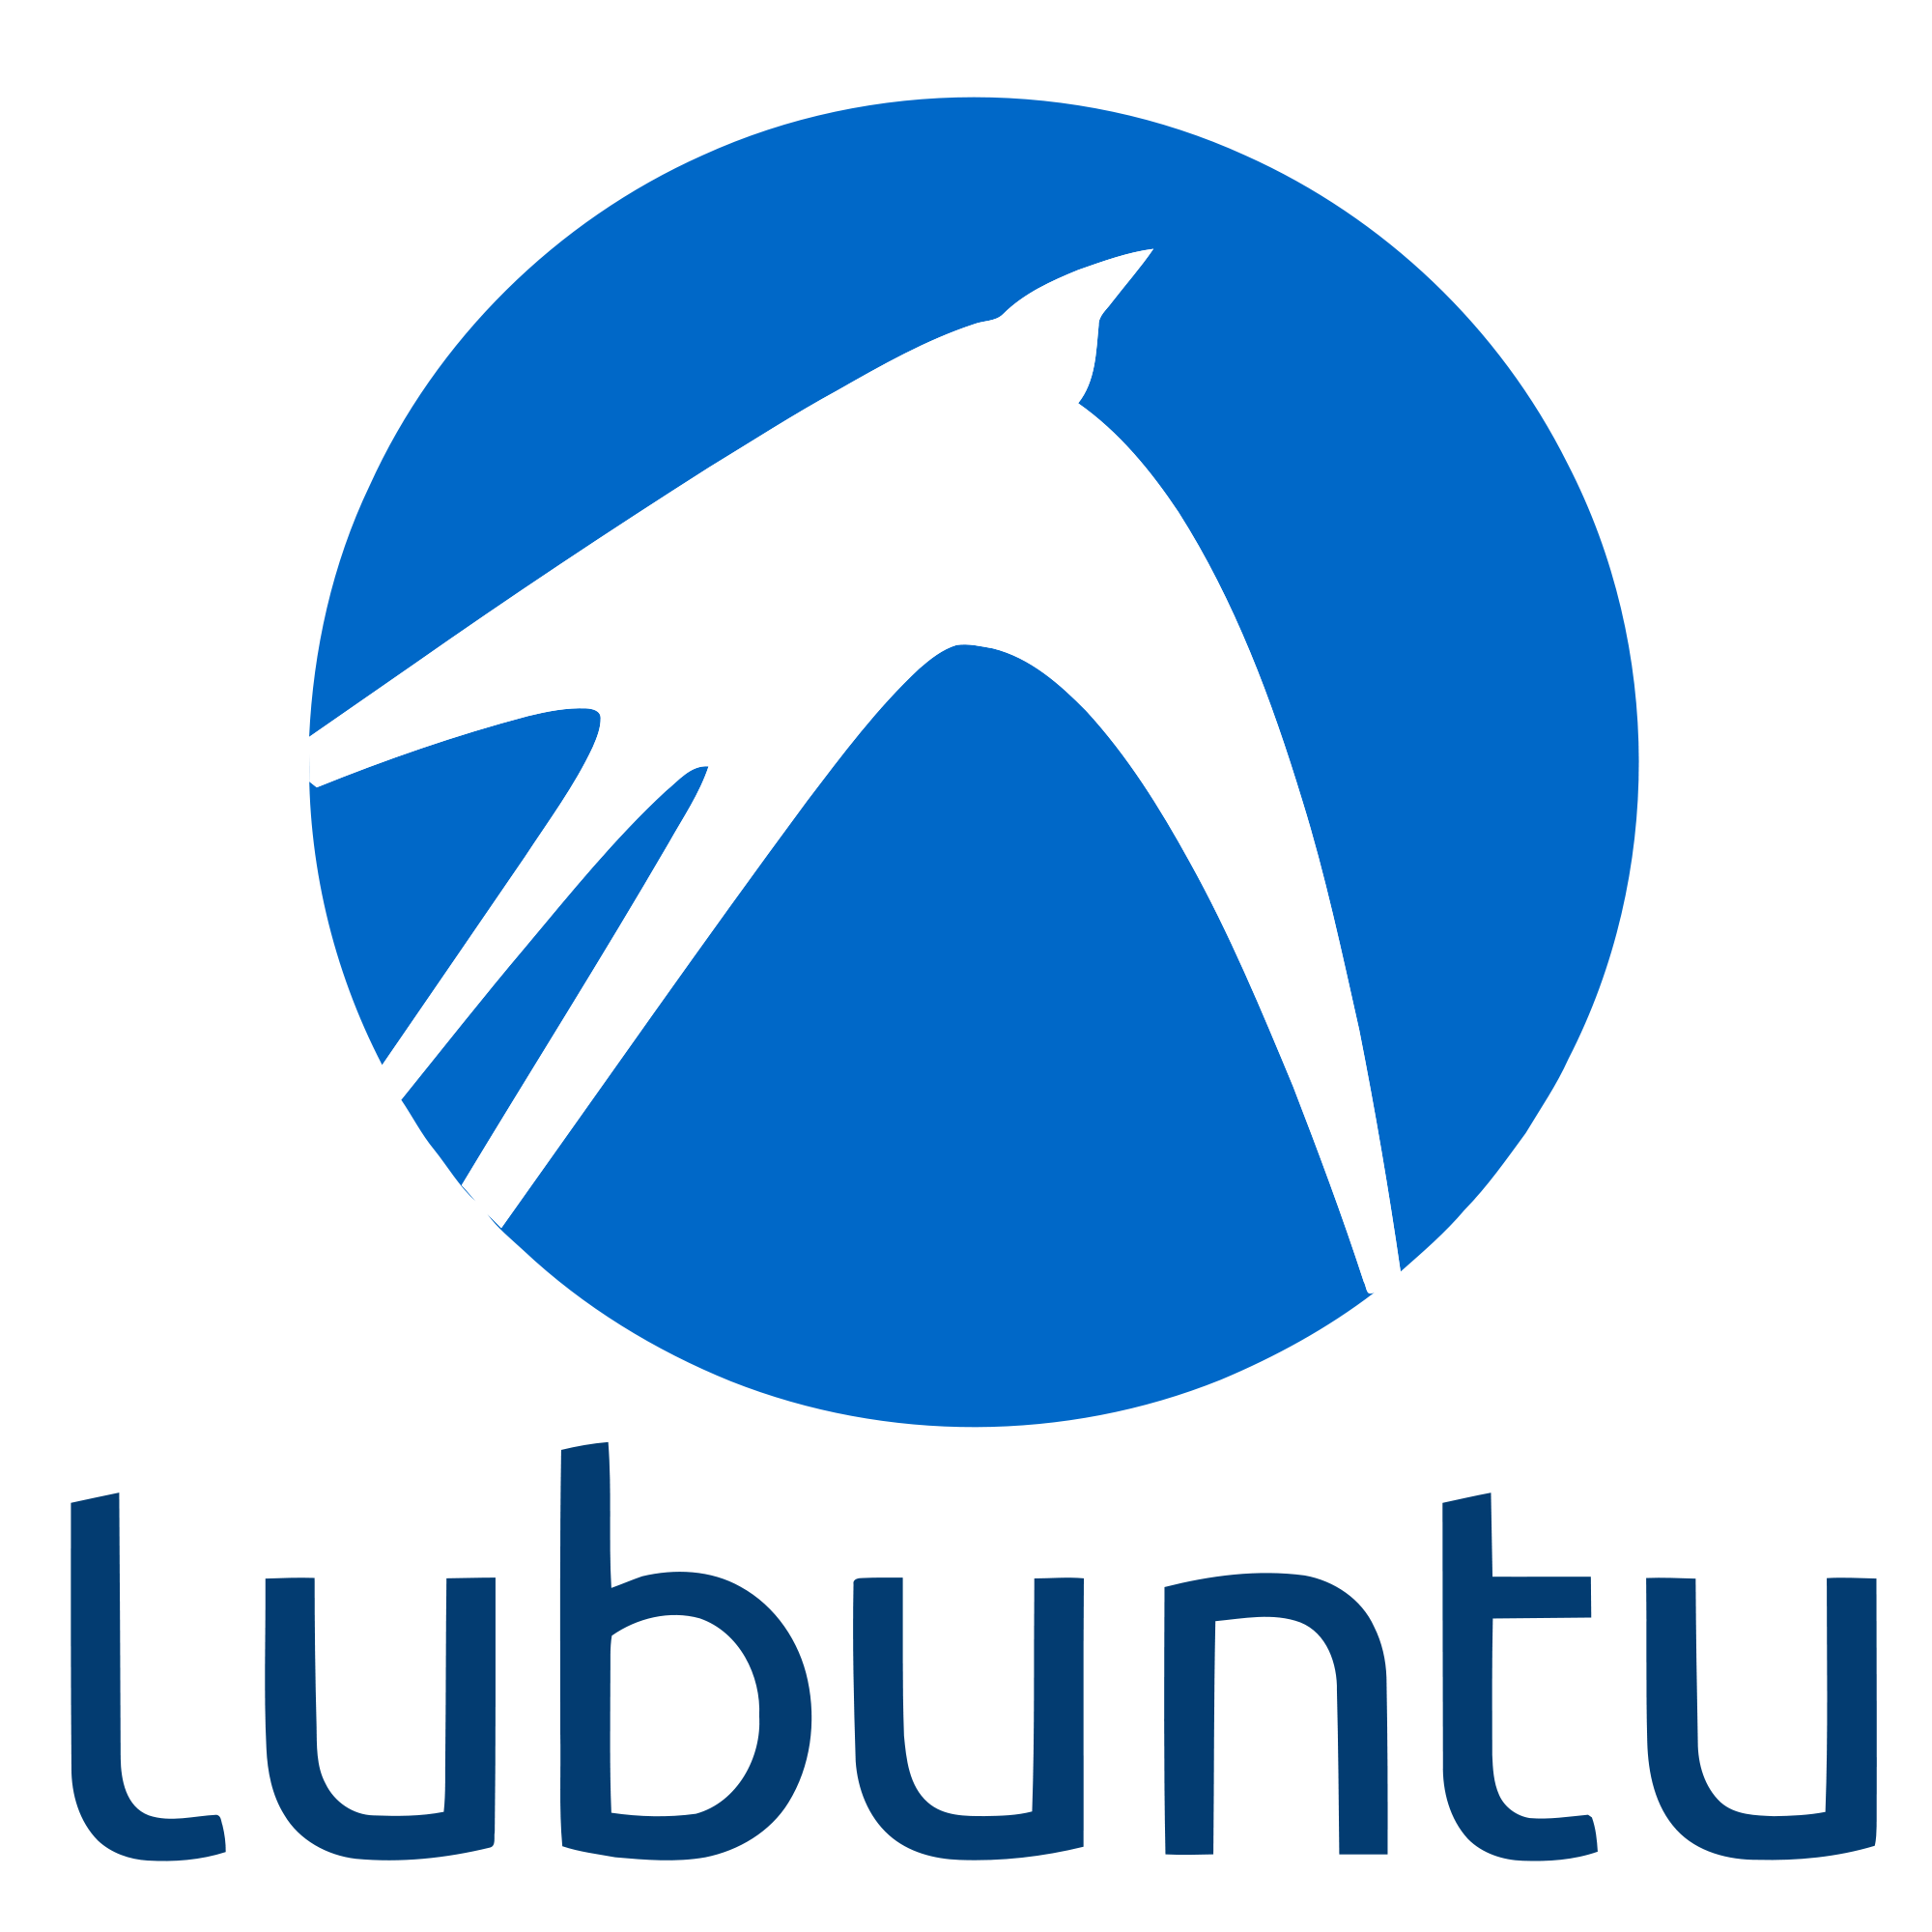 Hackaton-instalación de Lubuntu 16.04.1 | Oficina de Software Libre